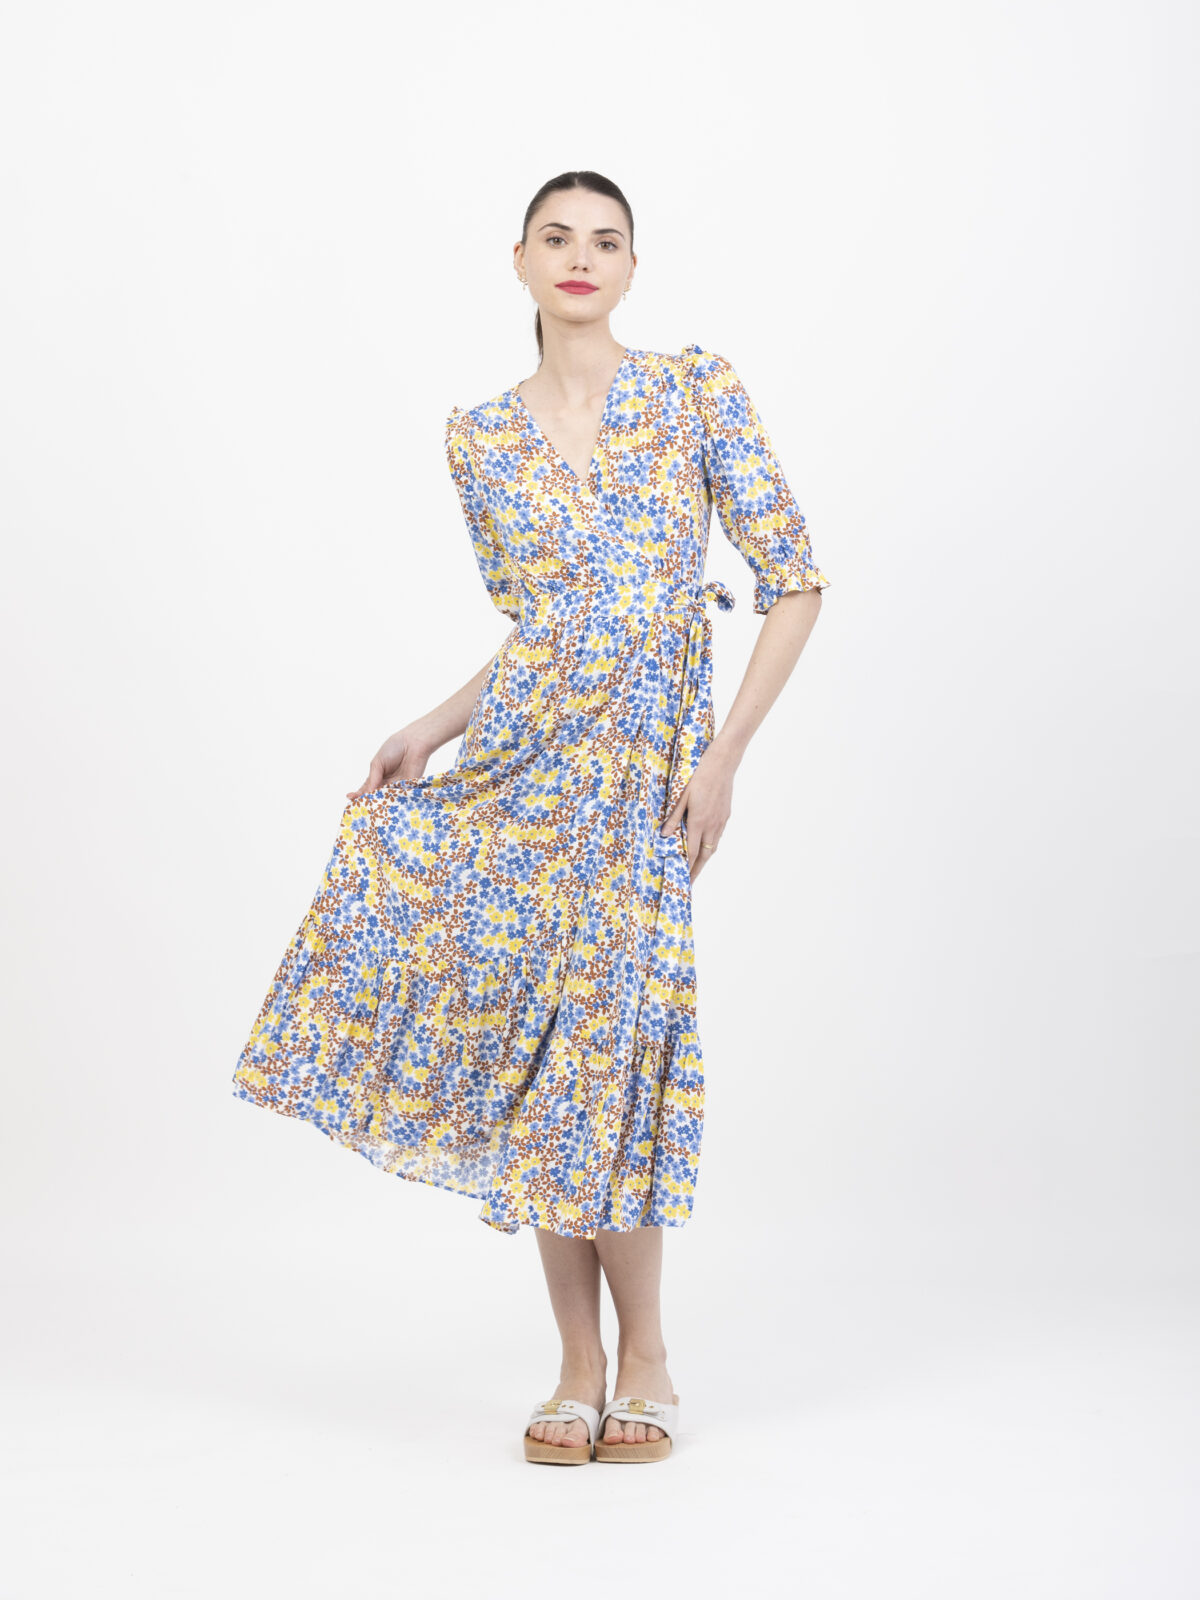 suncoo-claire-floral-dress-matchboxathens-shop-buy-athens-wrap-ruffles